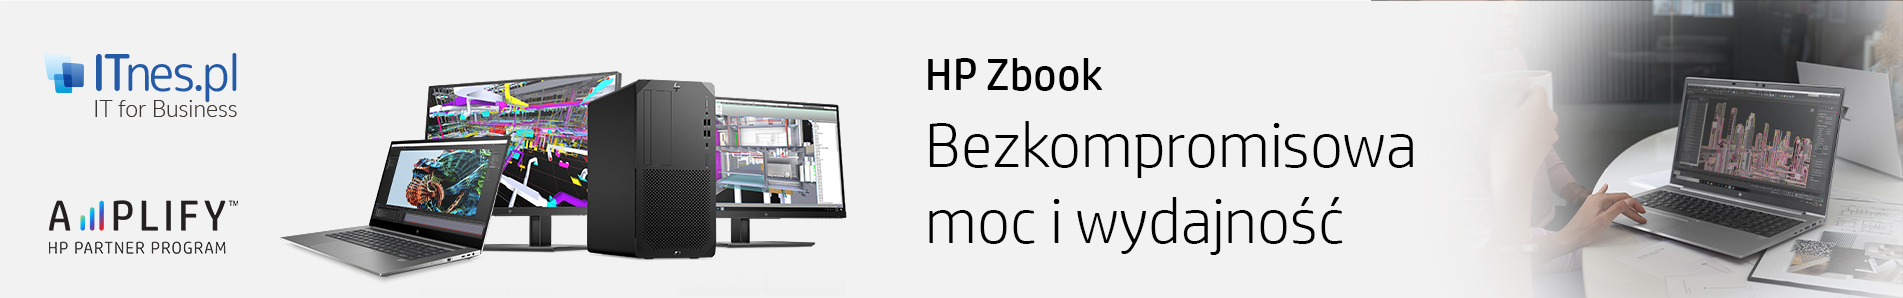 Mobilne stacje robocze HP ZBook w sklepie ITnes.pl